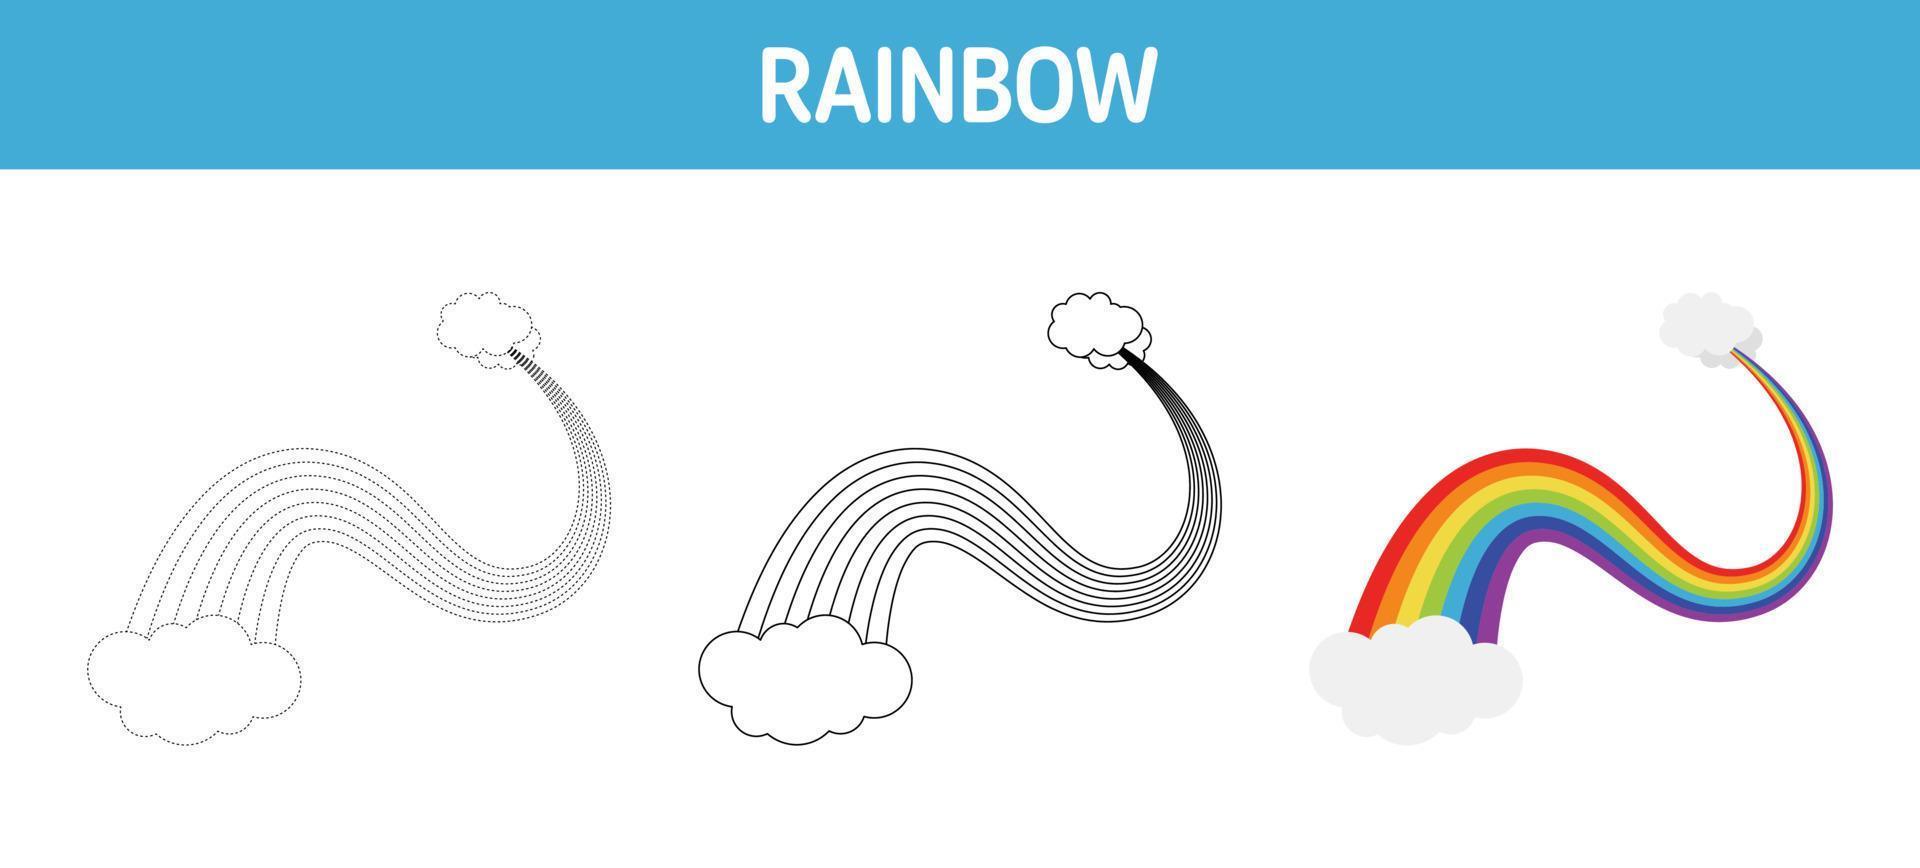 Arbeitsblatt zum Nachzeichnen und Färben von Regenbogen für Kinder vektor